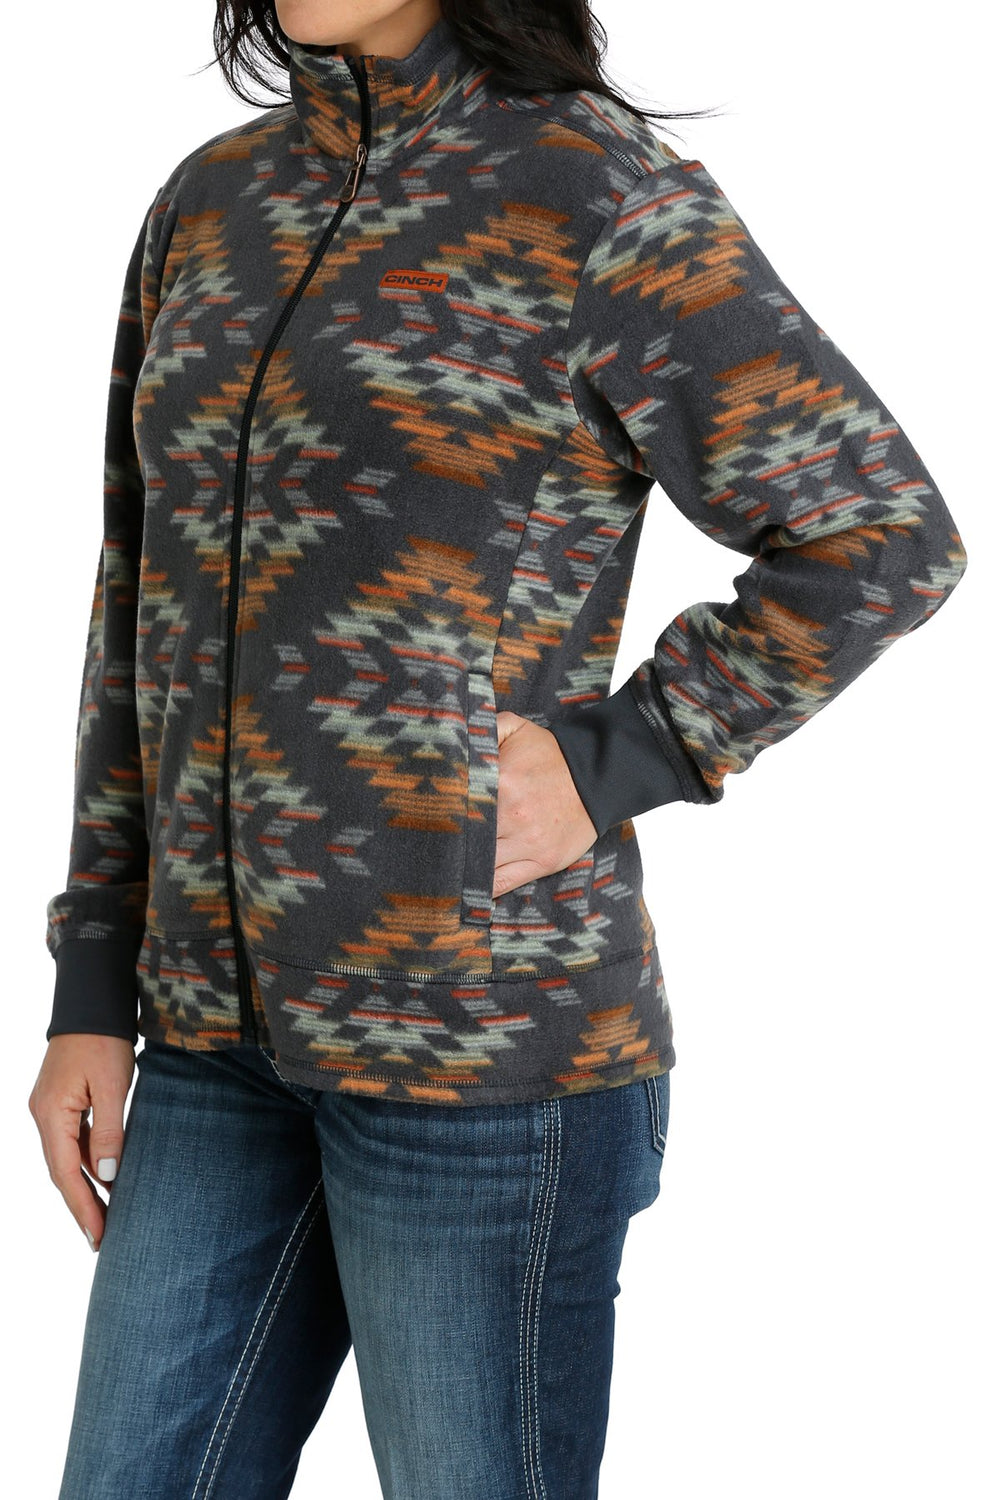 Cinch - Womens Aztec Fleece Jacket